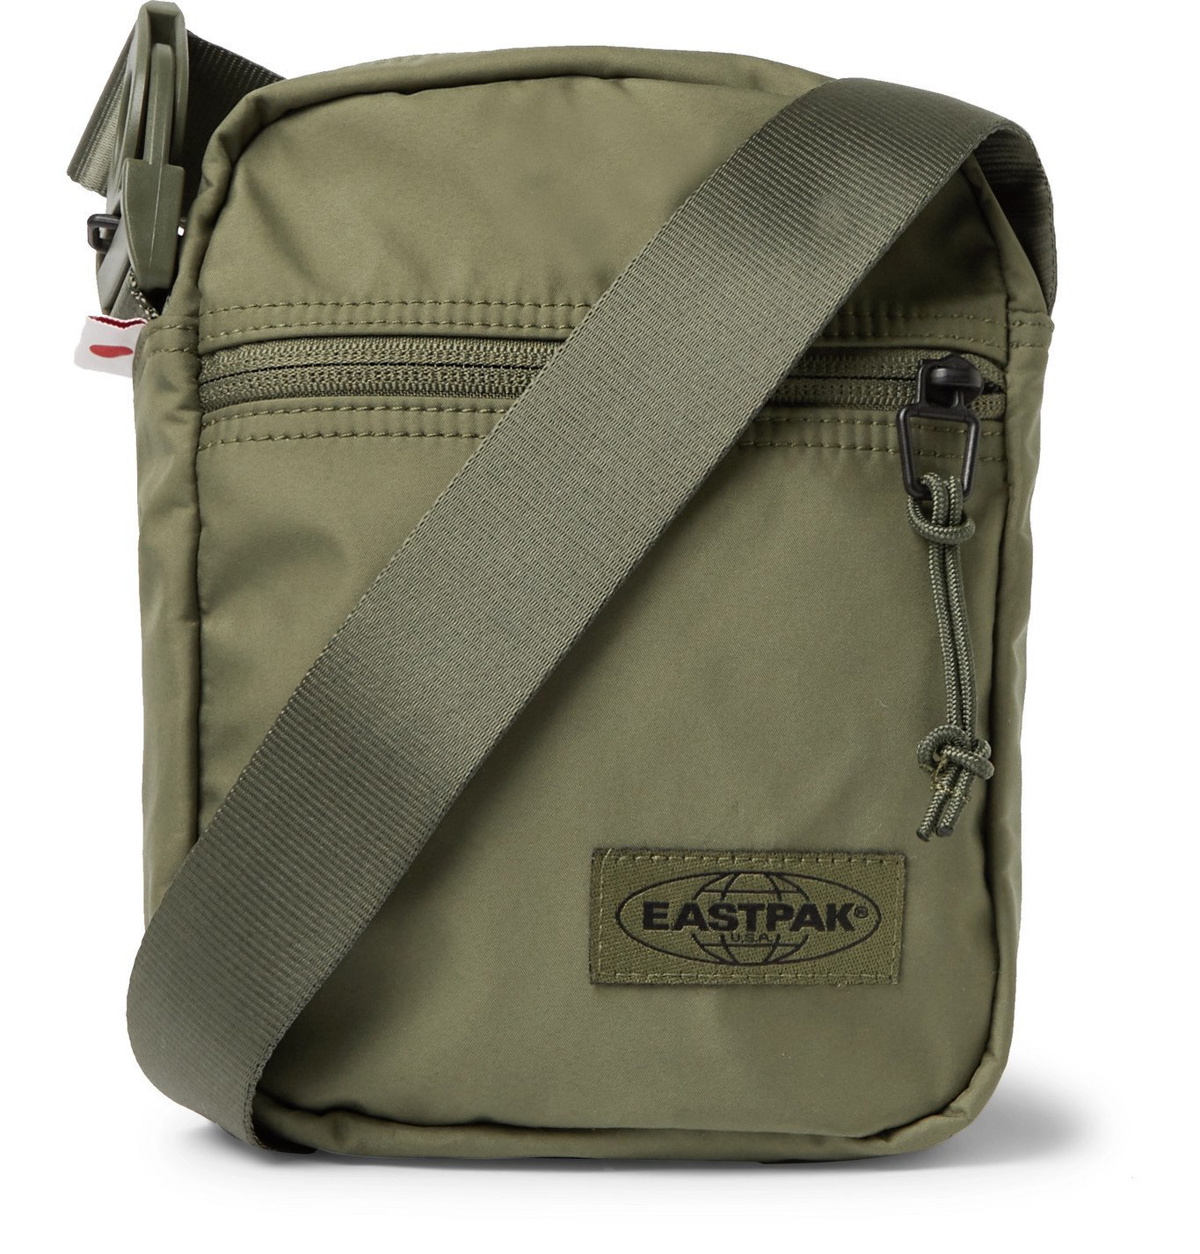 Eastpak Canvas Messenger Bag - Green Eastpak